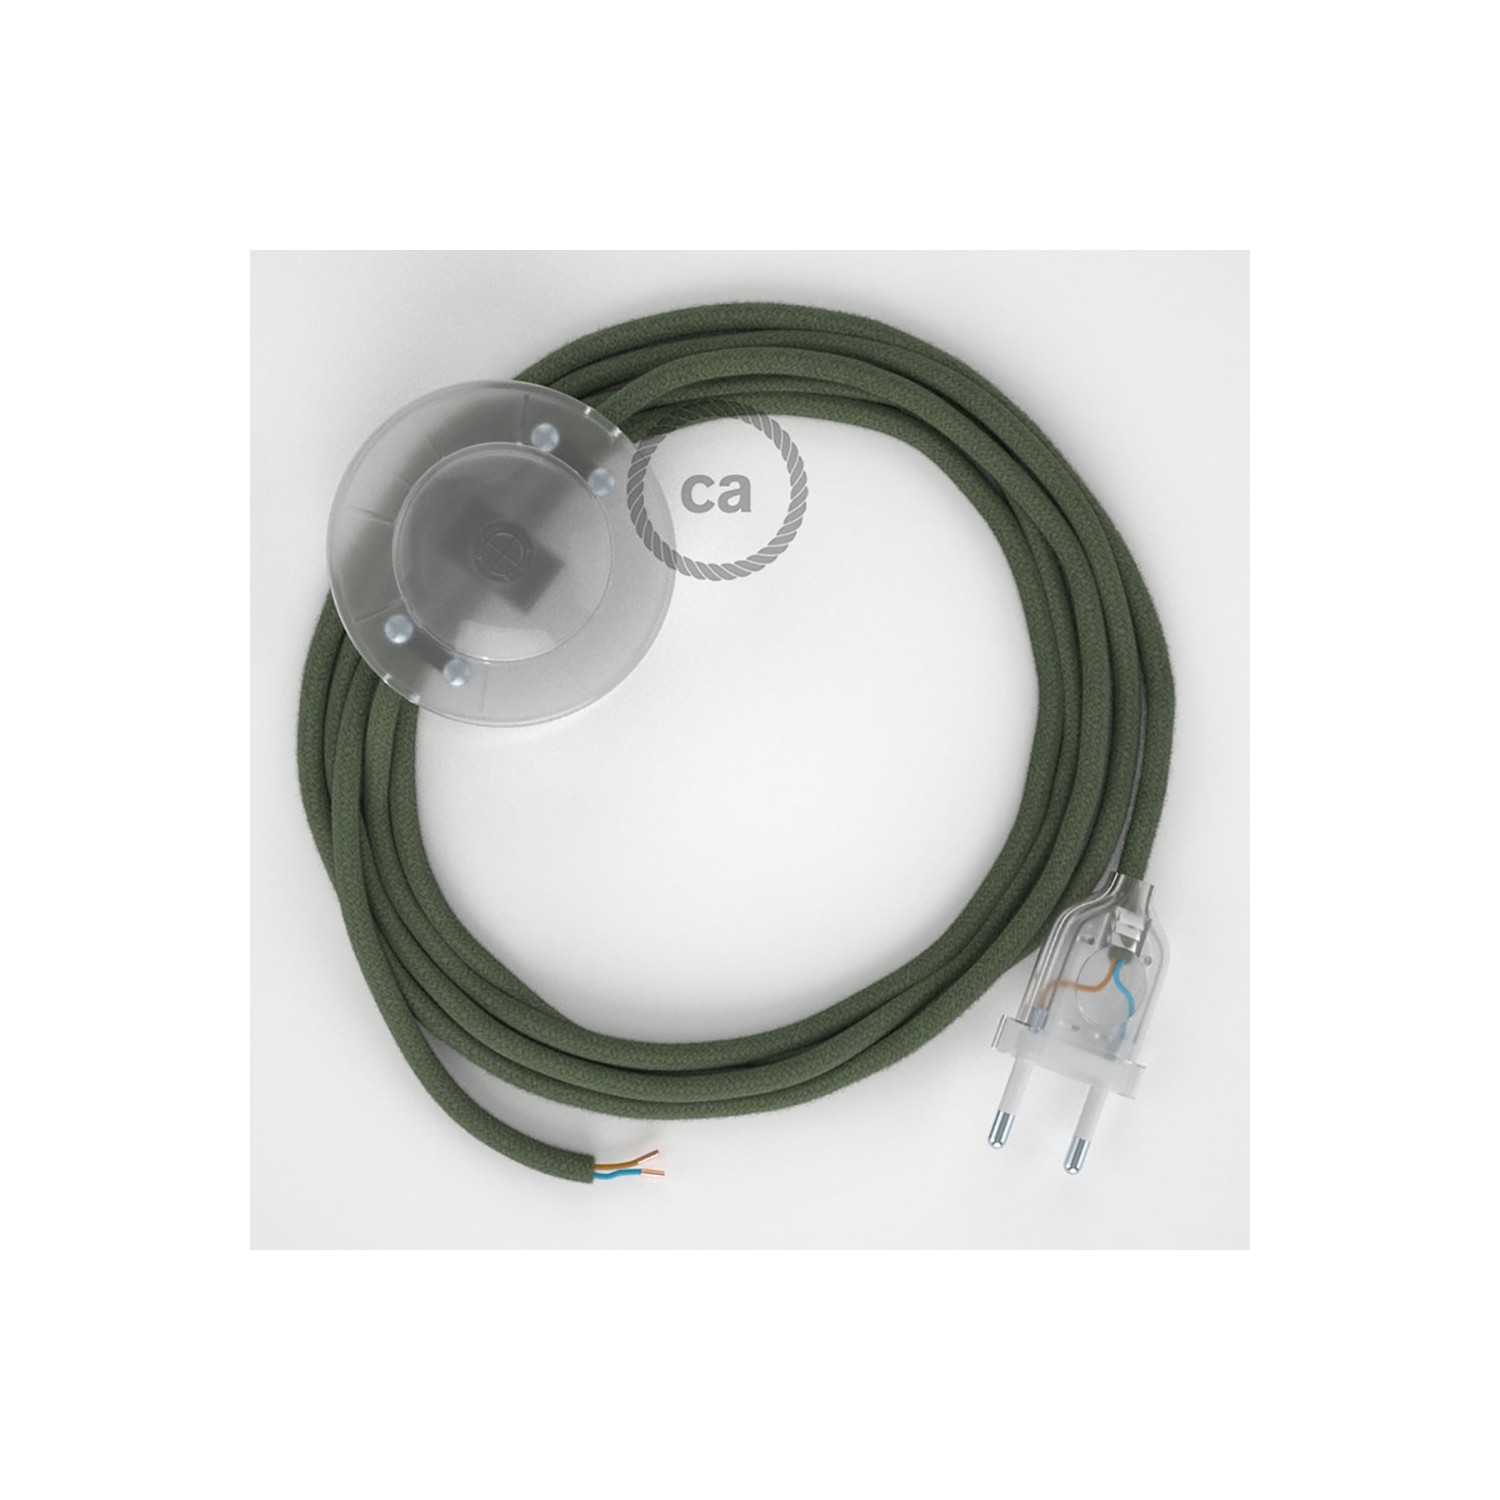 Napájací kábel pre podlahovú lampu, RC63 Zeleno - šedý bavlnený 3 m. Vyberte si farbu zástrčky a vypínača.